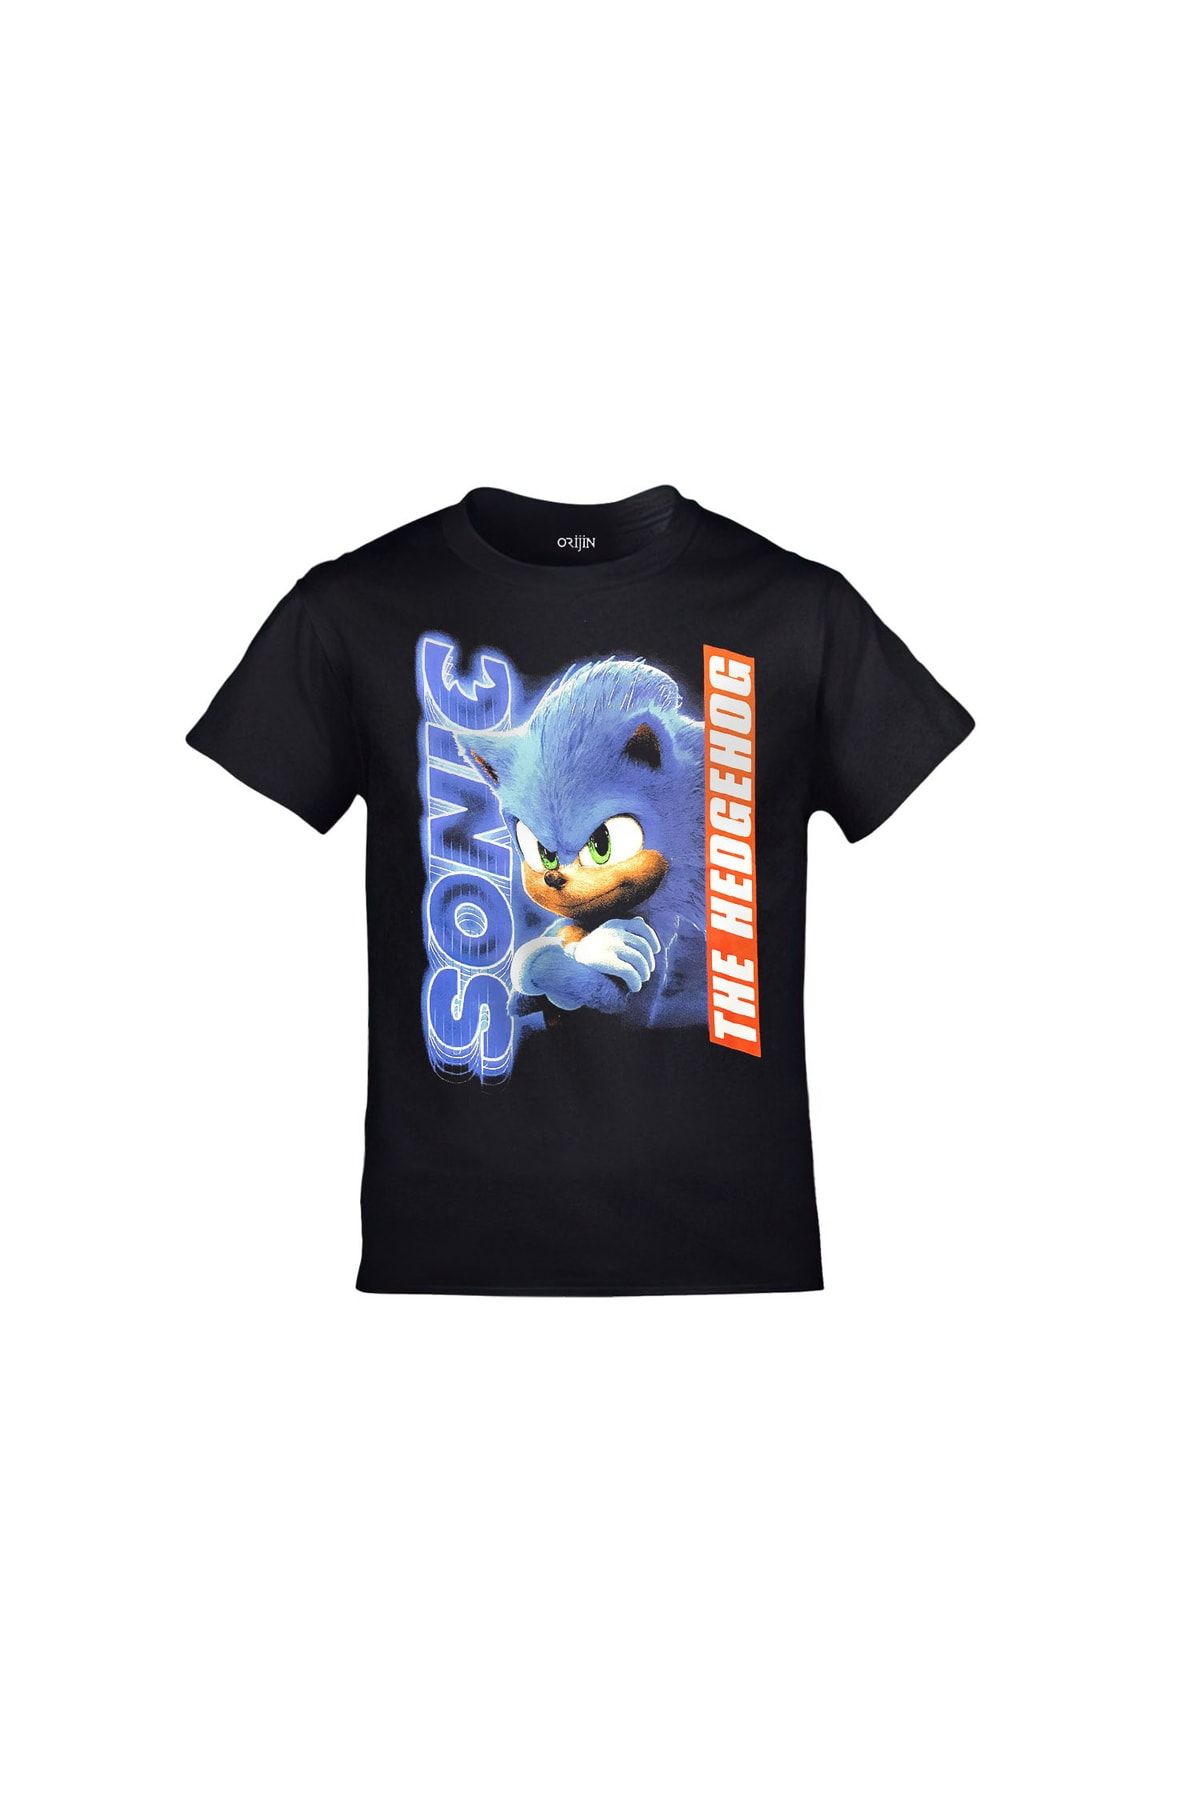 Orijin Tekstil Sonic The Hedgehog Baskılı Siyah Çocuk Tshirt